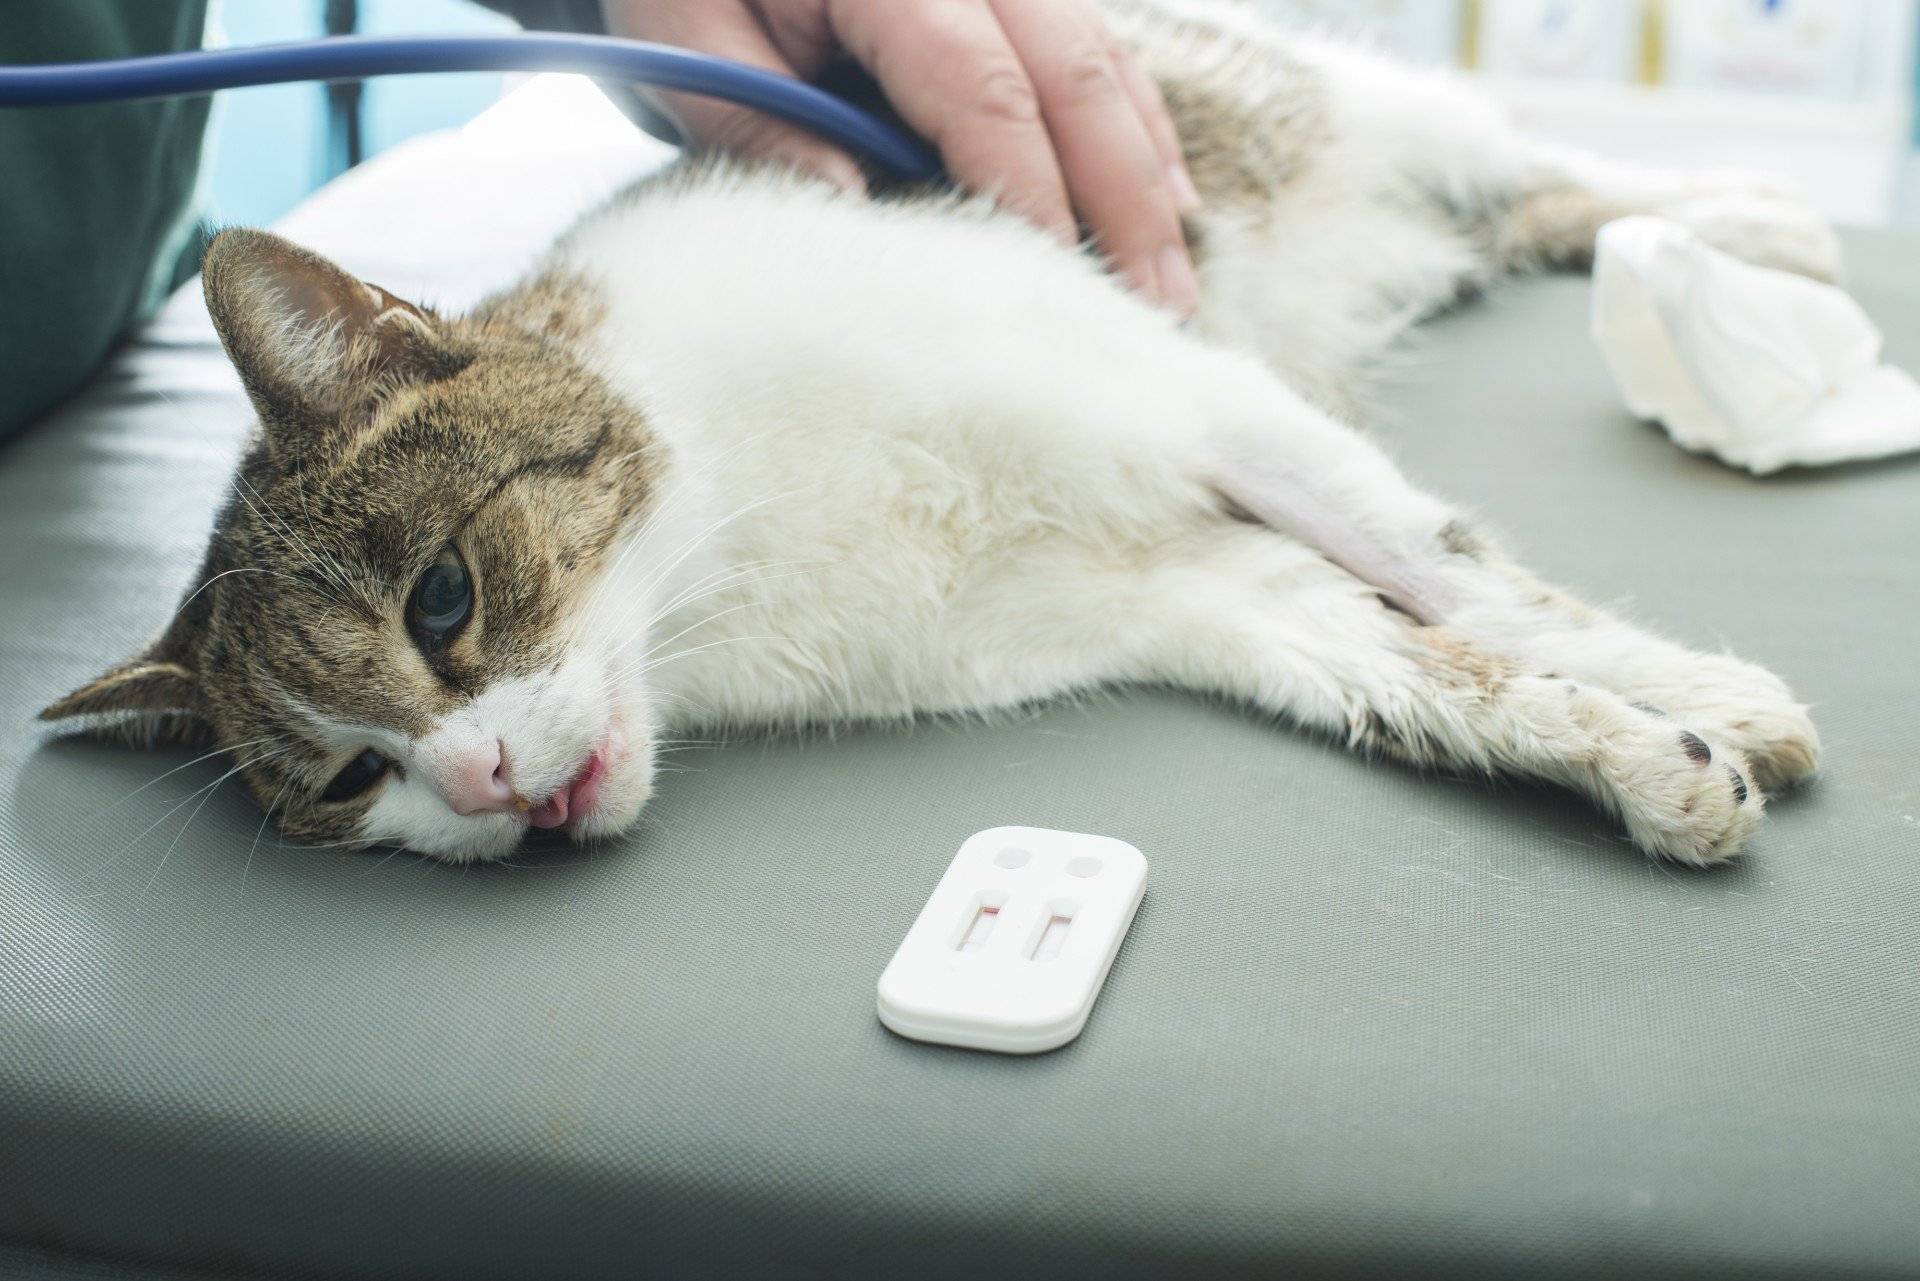 Понос с кровью у кота: причины, как лечить питомца дома и в клинике